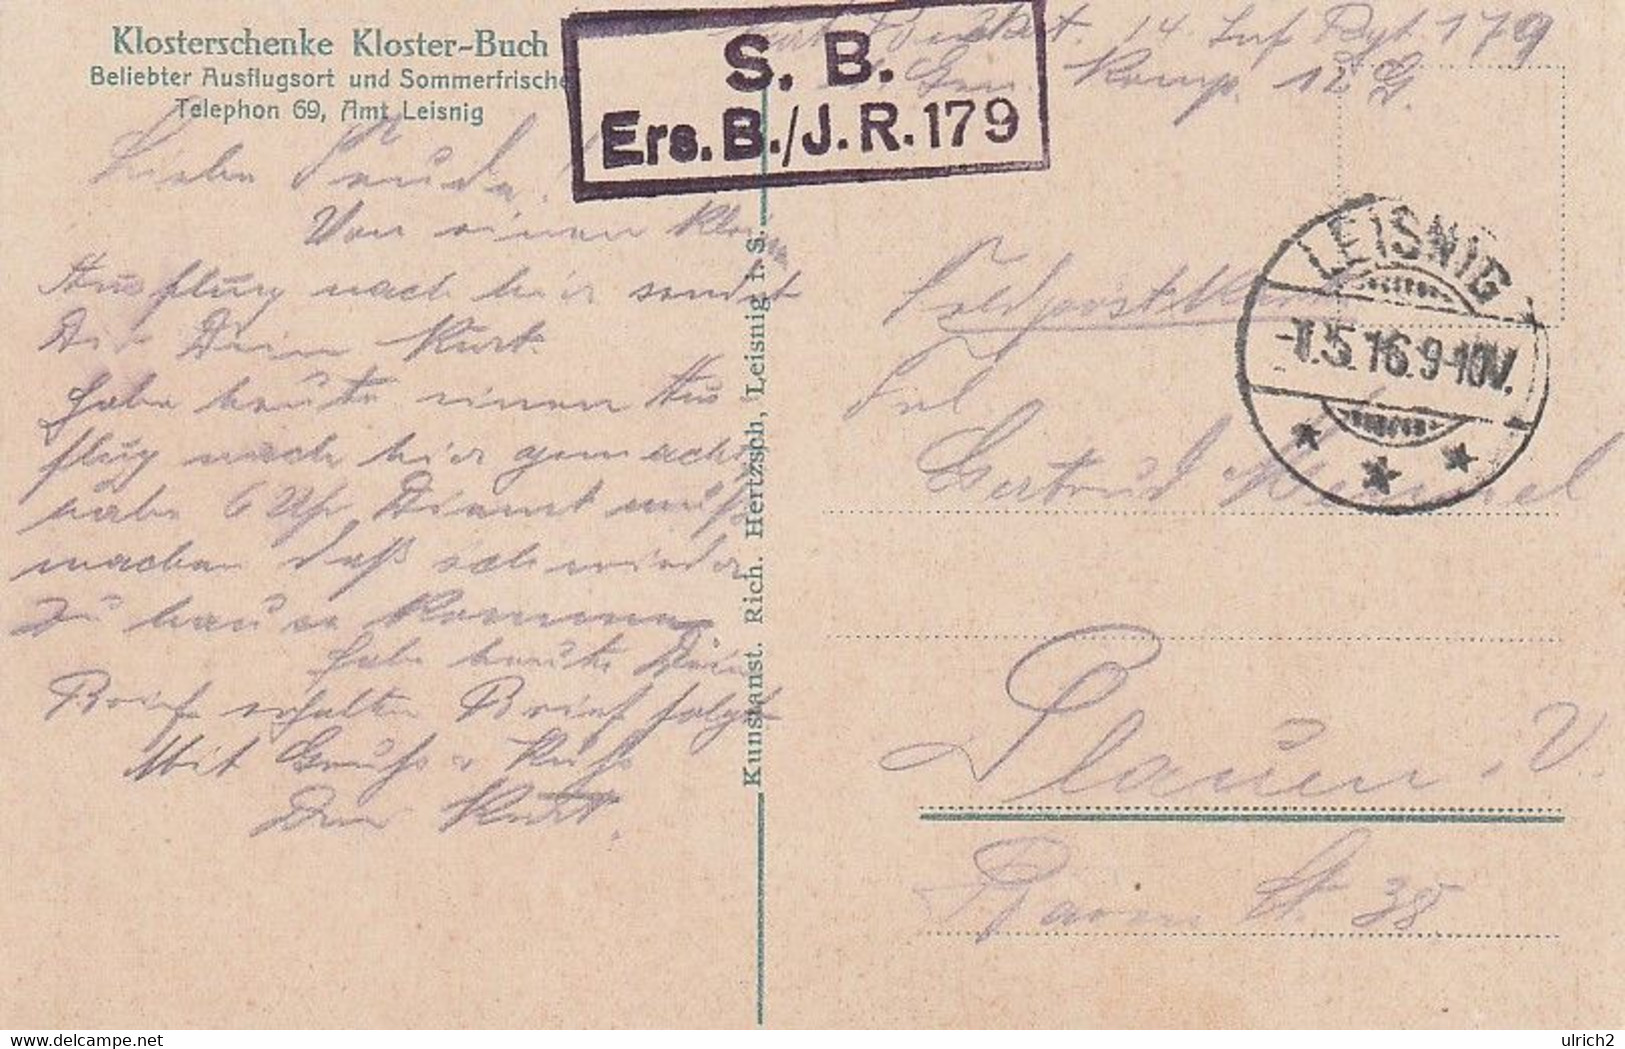 AK Kloster Buch - Feldpost Ers. B./J.R. 179 - 1916 (62018) - Leisnig